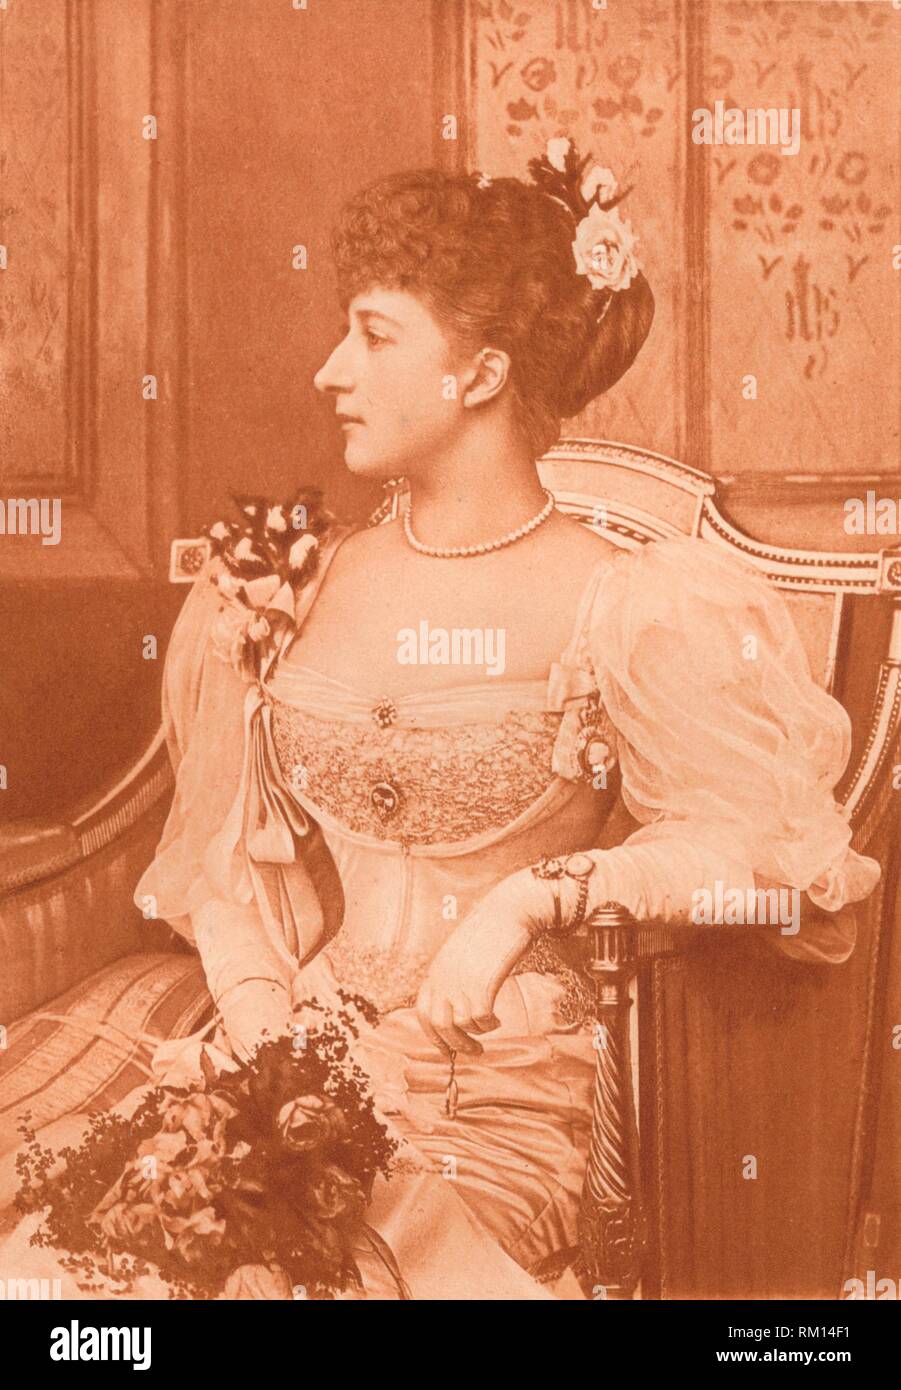 'S.A.R. la Princesse Maud de Galles', C1900. Autore: Paul Dujardin. Foto Stock